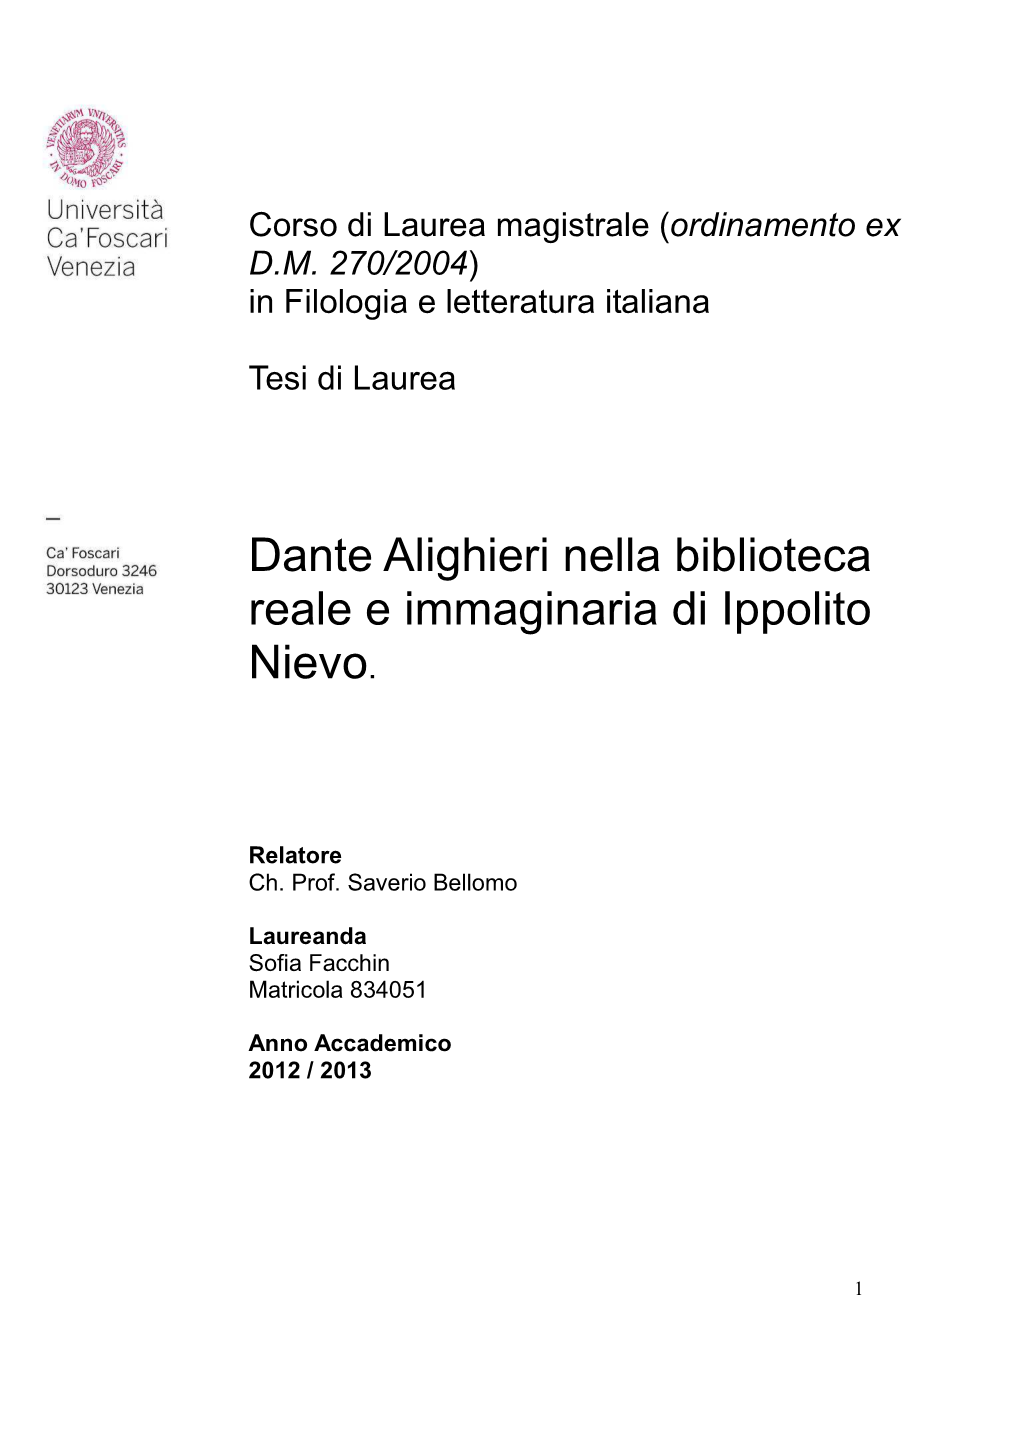 Dante Alighieri Nella Biblioteca Reale E Immaginaria Di Ippolito Nievo